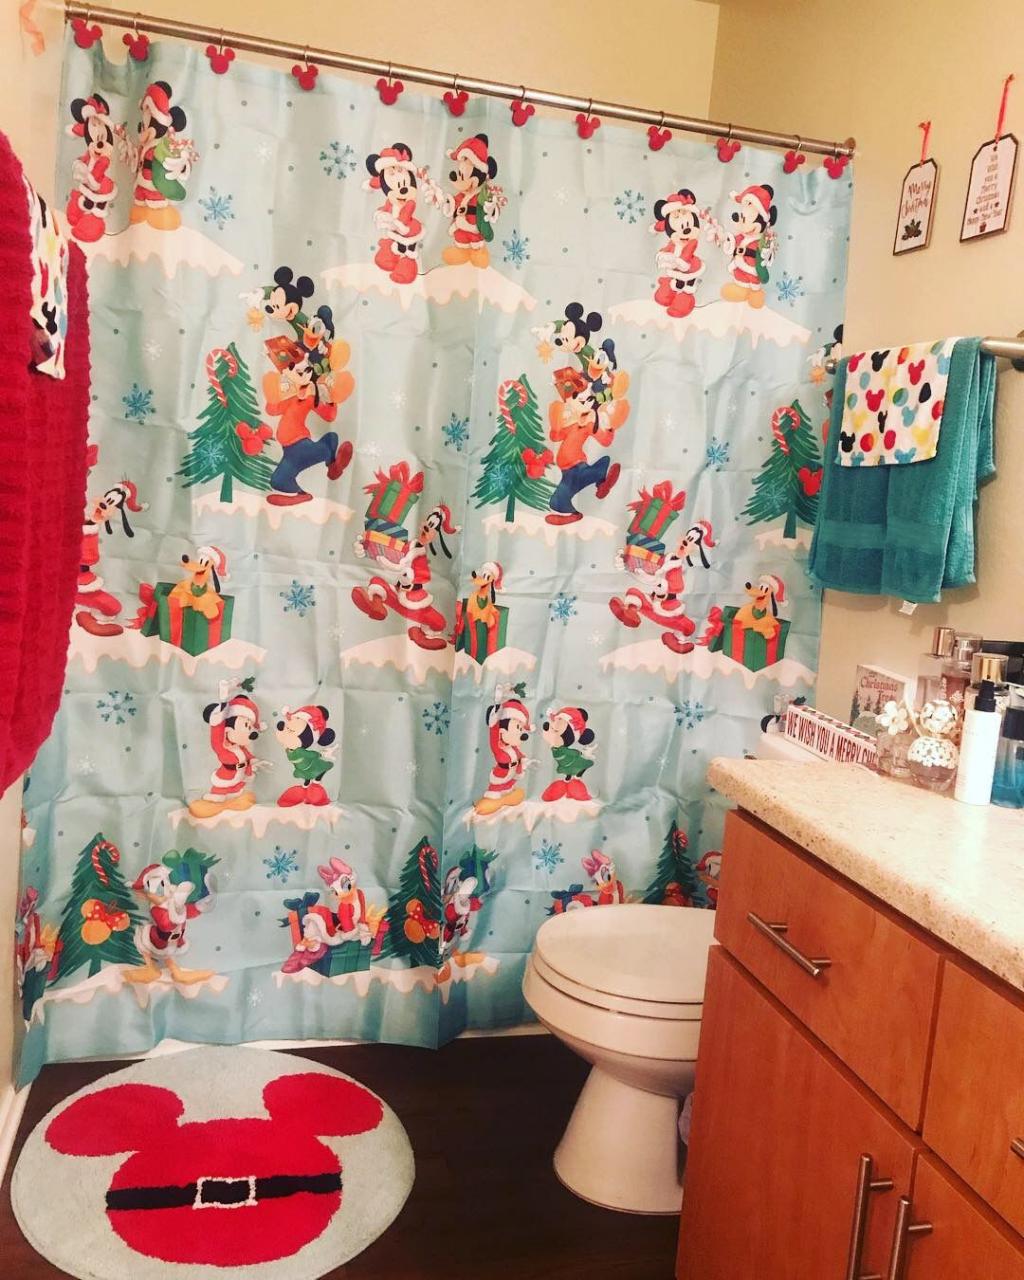 Our Christmas themed bathroom! Disney bathroom, Toddler bathroom